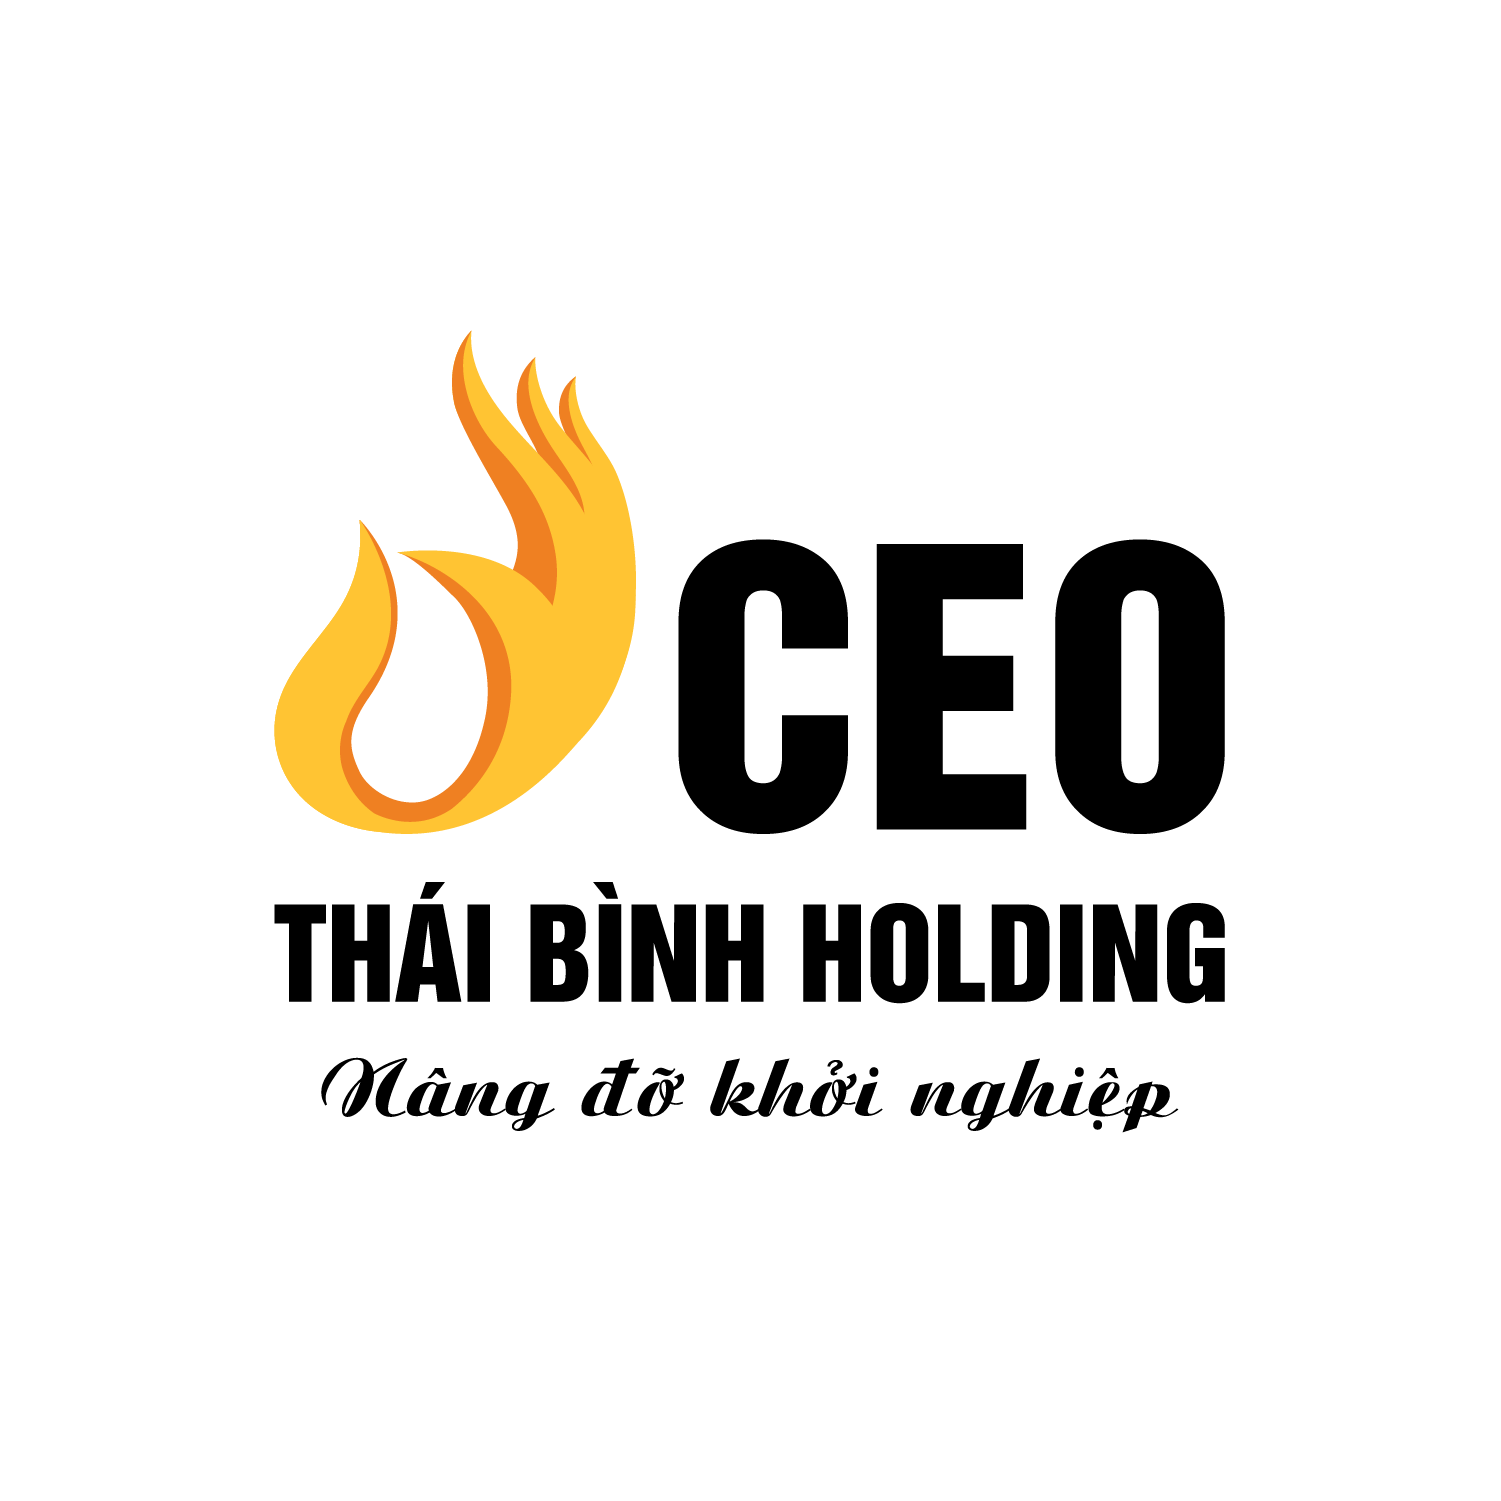 Công ty Cổ phần CEO Thái Bình Holding tuyển dụng Nhân Viên Telesales lương thưởng hấp dẫn, chế độ đãi ngộ cao, môi trường chuyên nghiệp